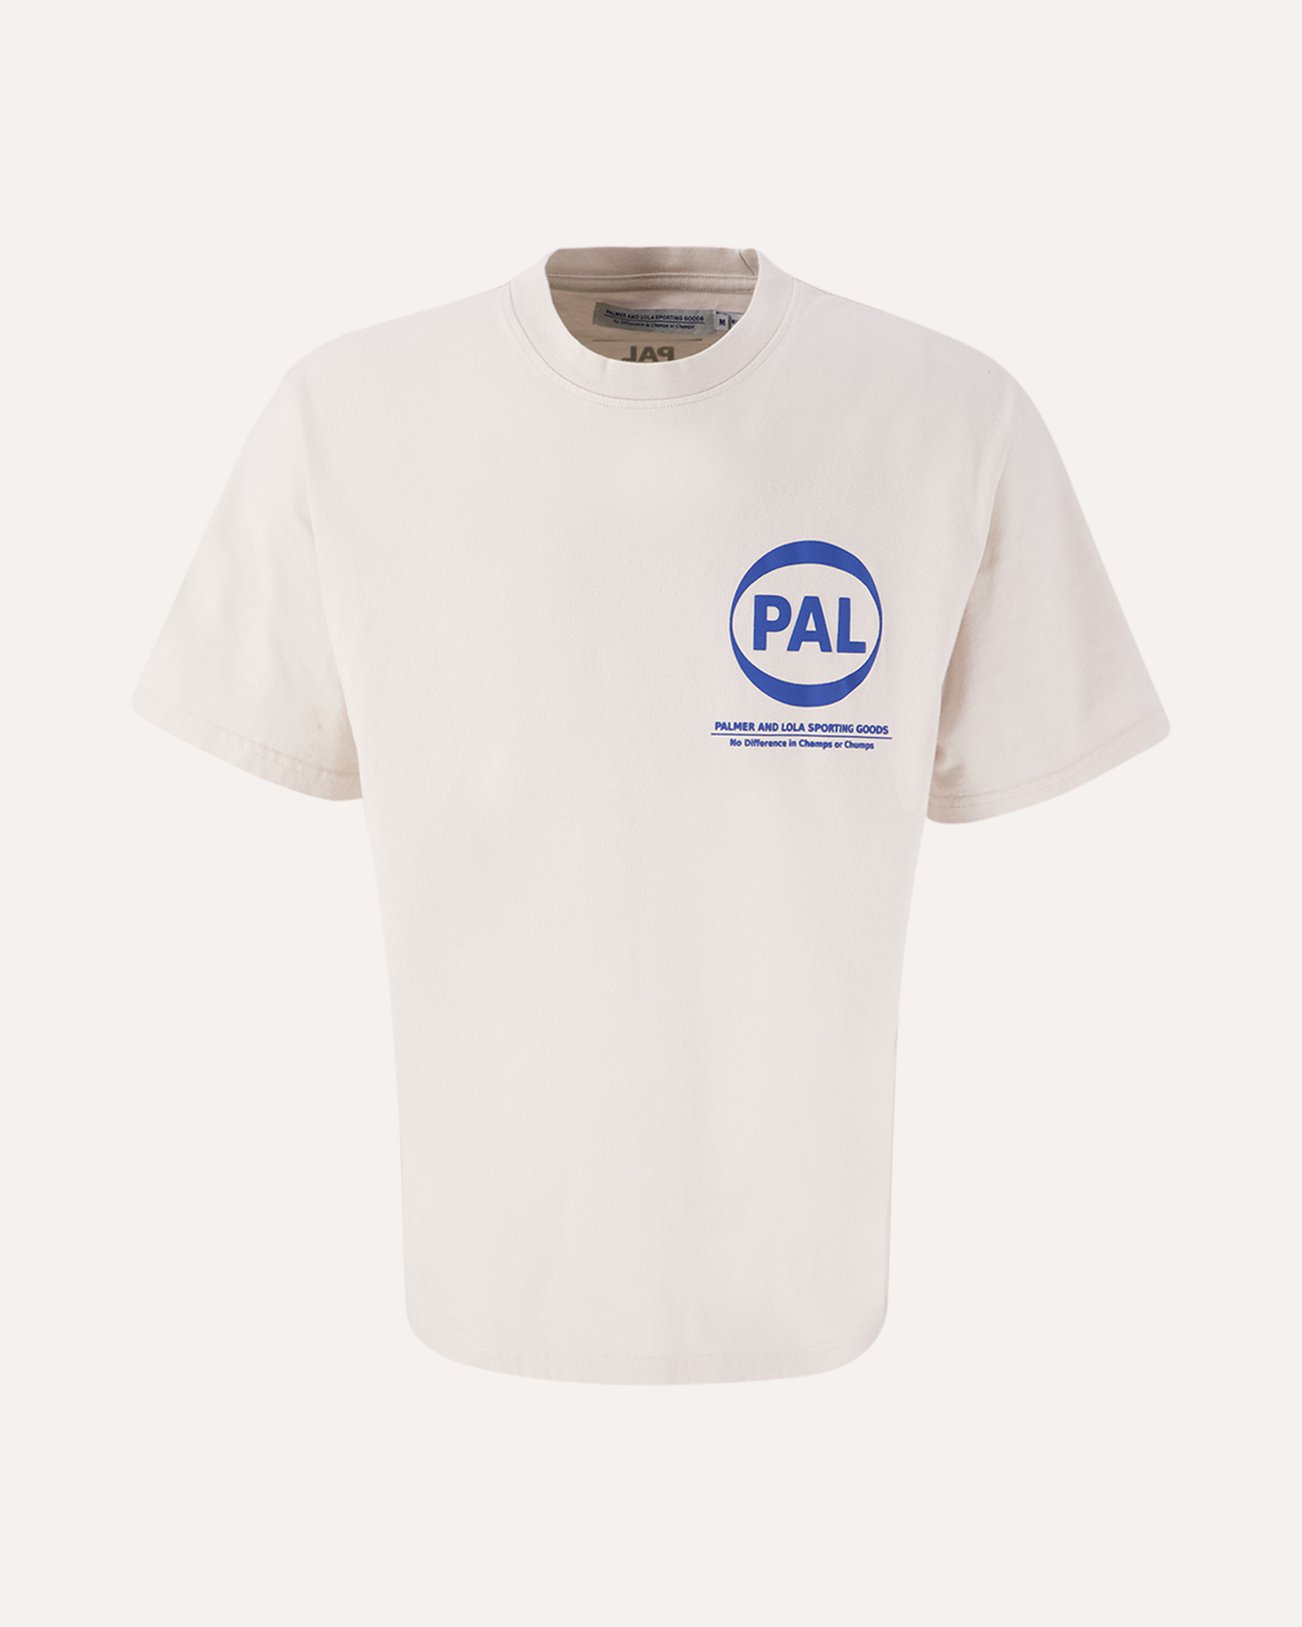 PAL Sporting Goods Coef / Pal International Pre Game Tshirt BEIGE 1